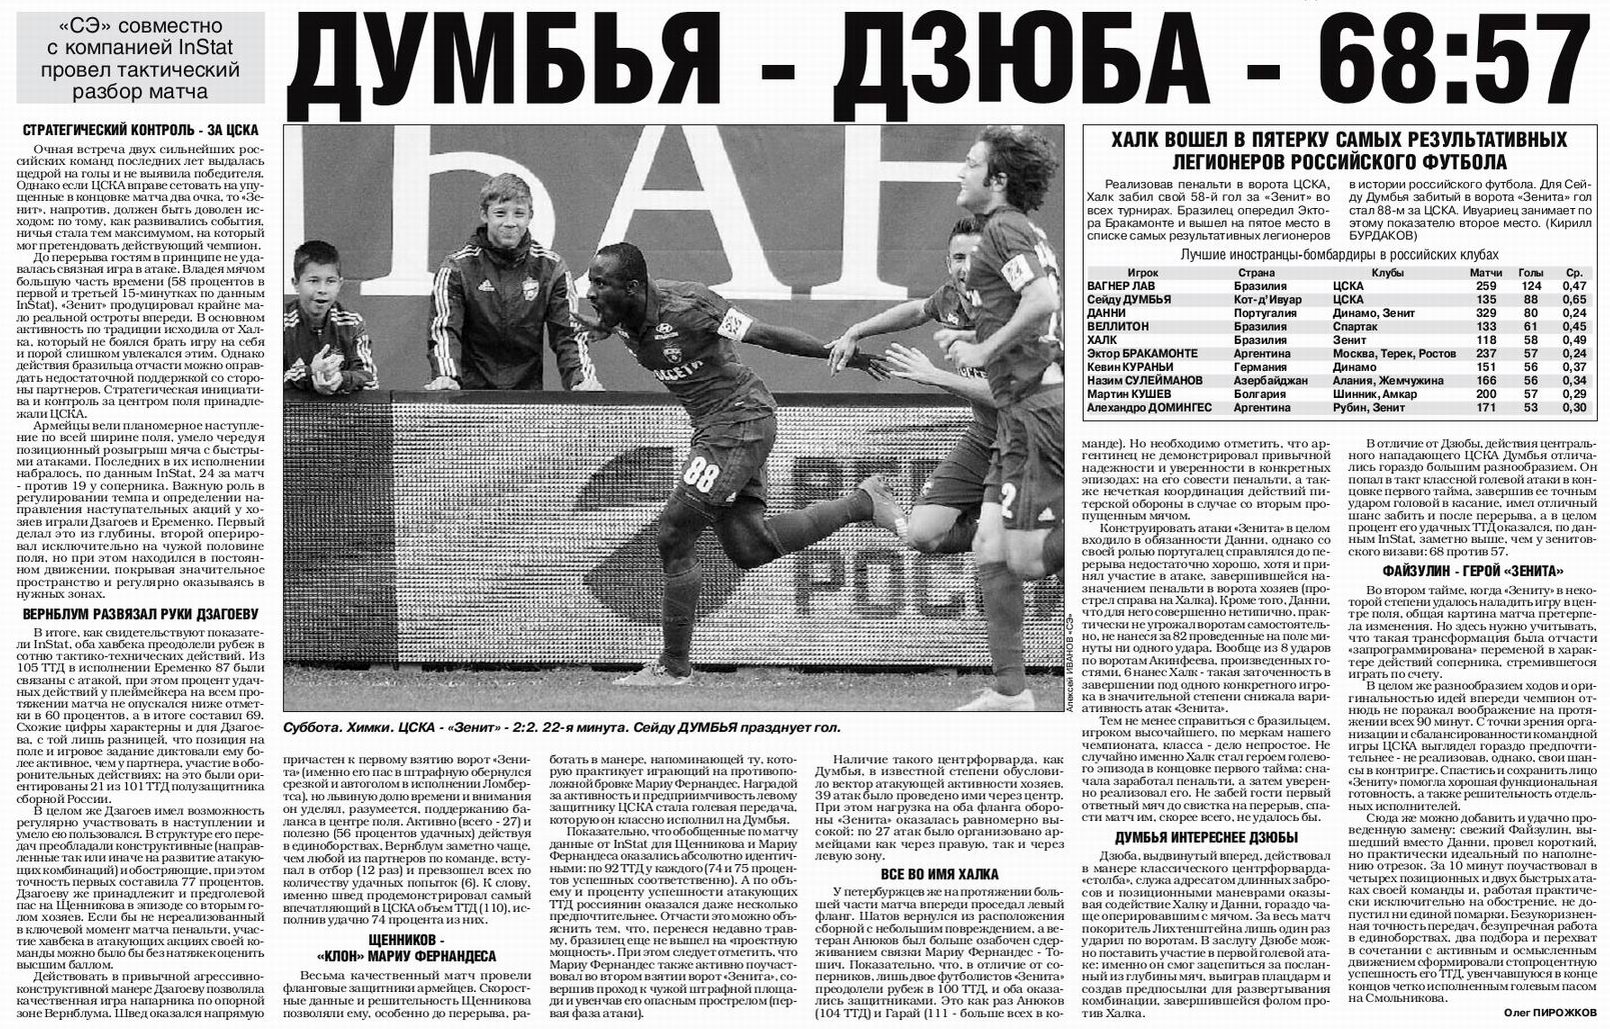 2015-09-12.CSKA-Zenit.1